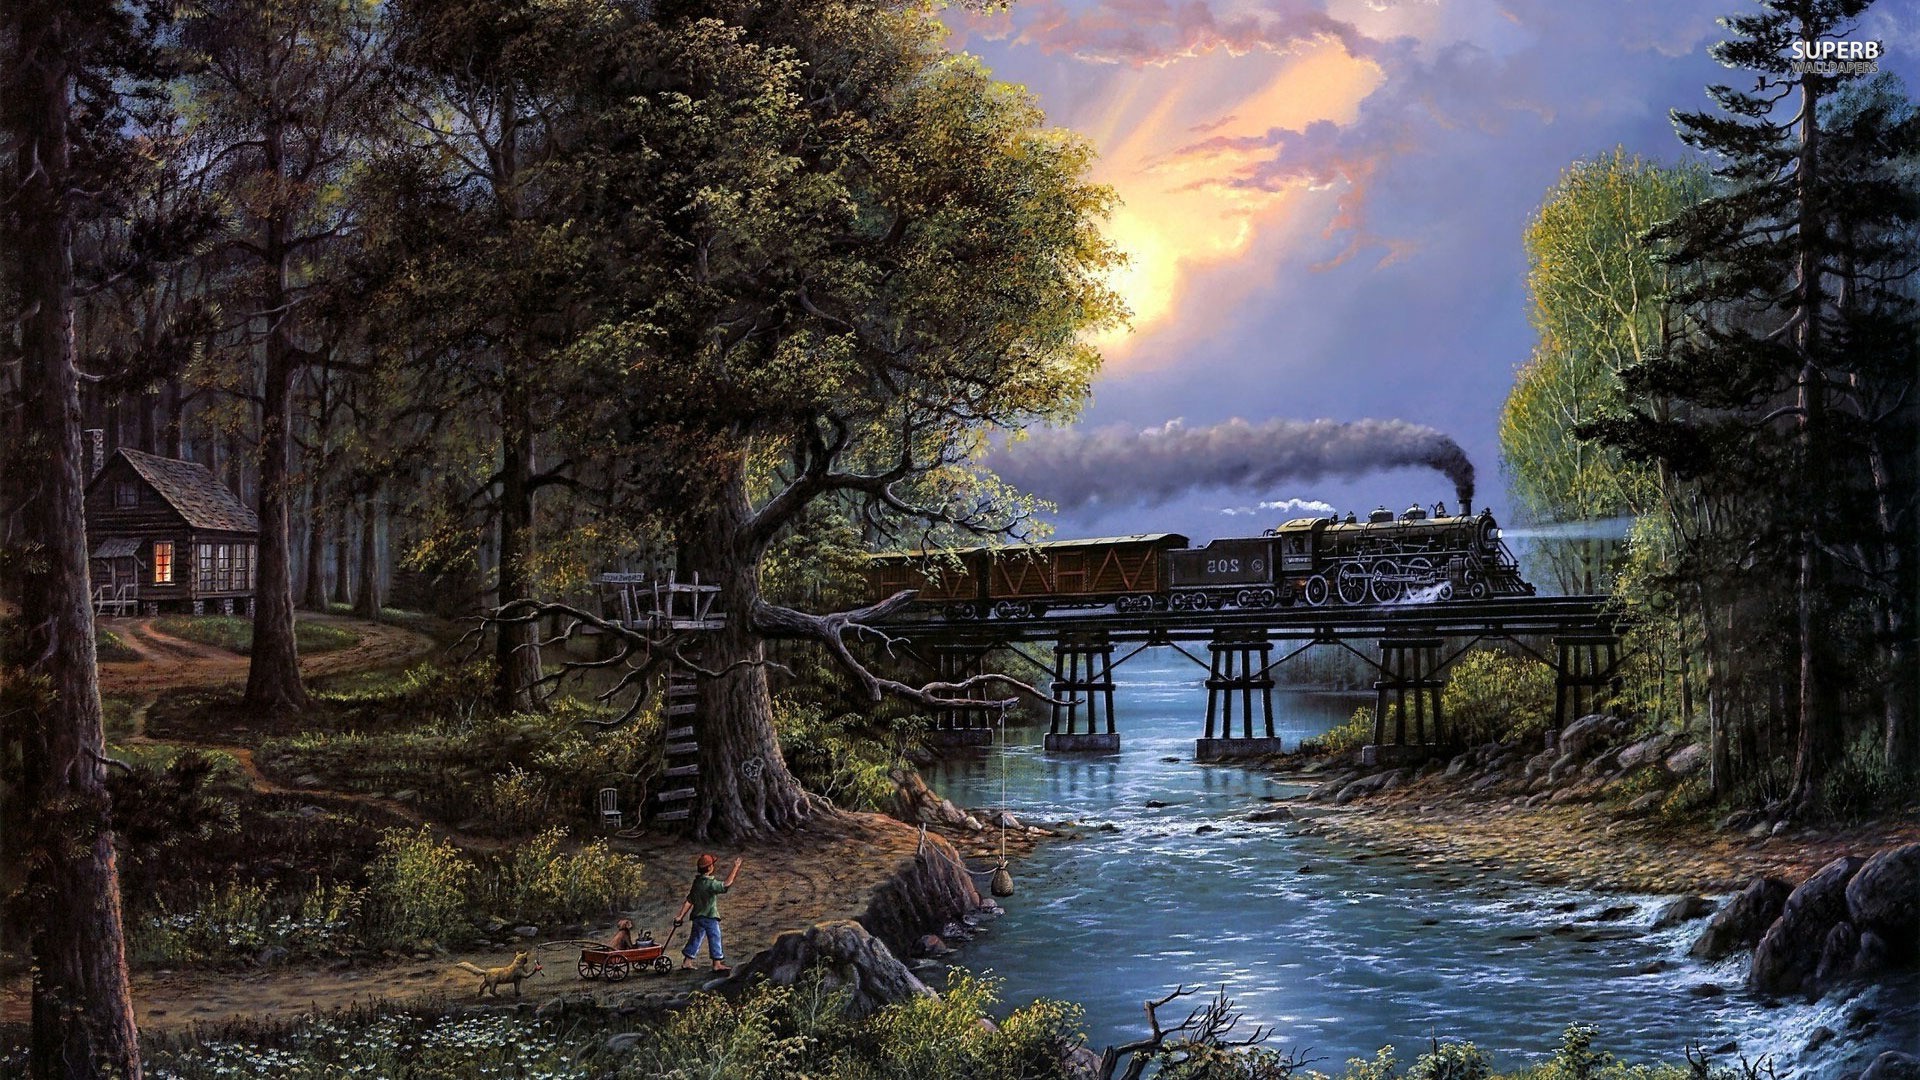 trees, River, Stones, Sun, Train, Cabin Wallpaper